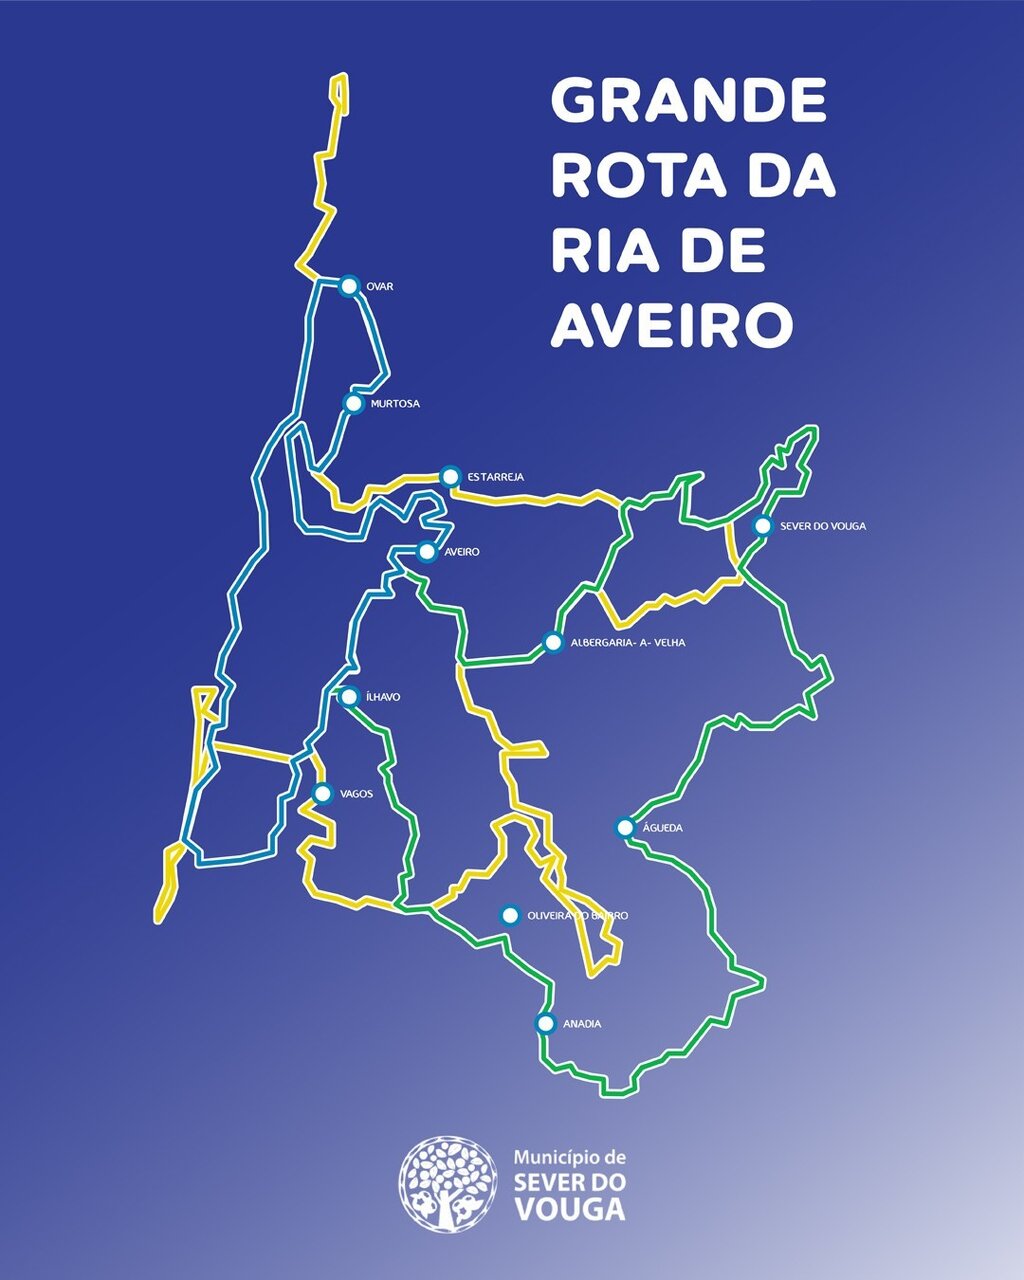 O concelho de Sever do Vouga vai integrar a “Grande Rota da Ria de Aveiro”